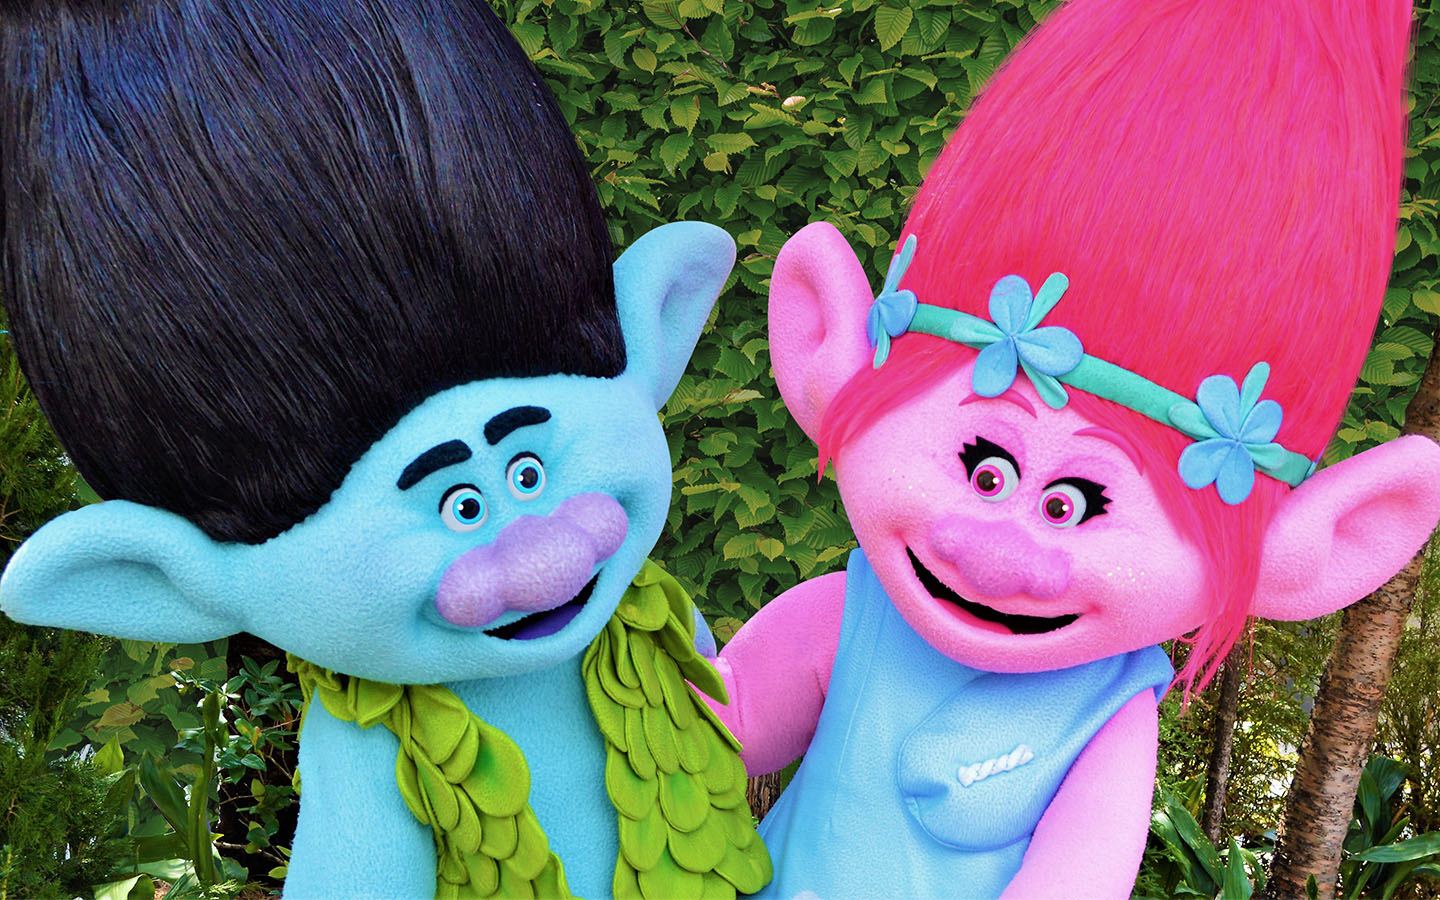 Universal en Orlando y Los Angeles celebran la película Trolls con nuevas experiencias en los parques